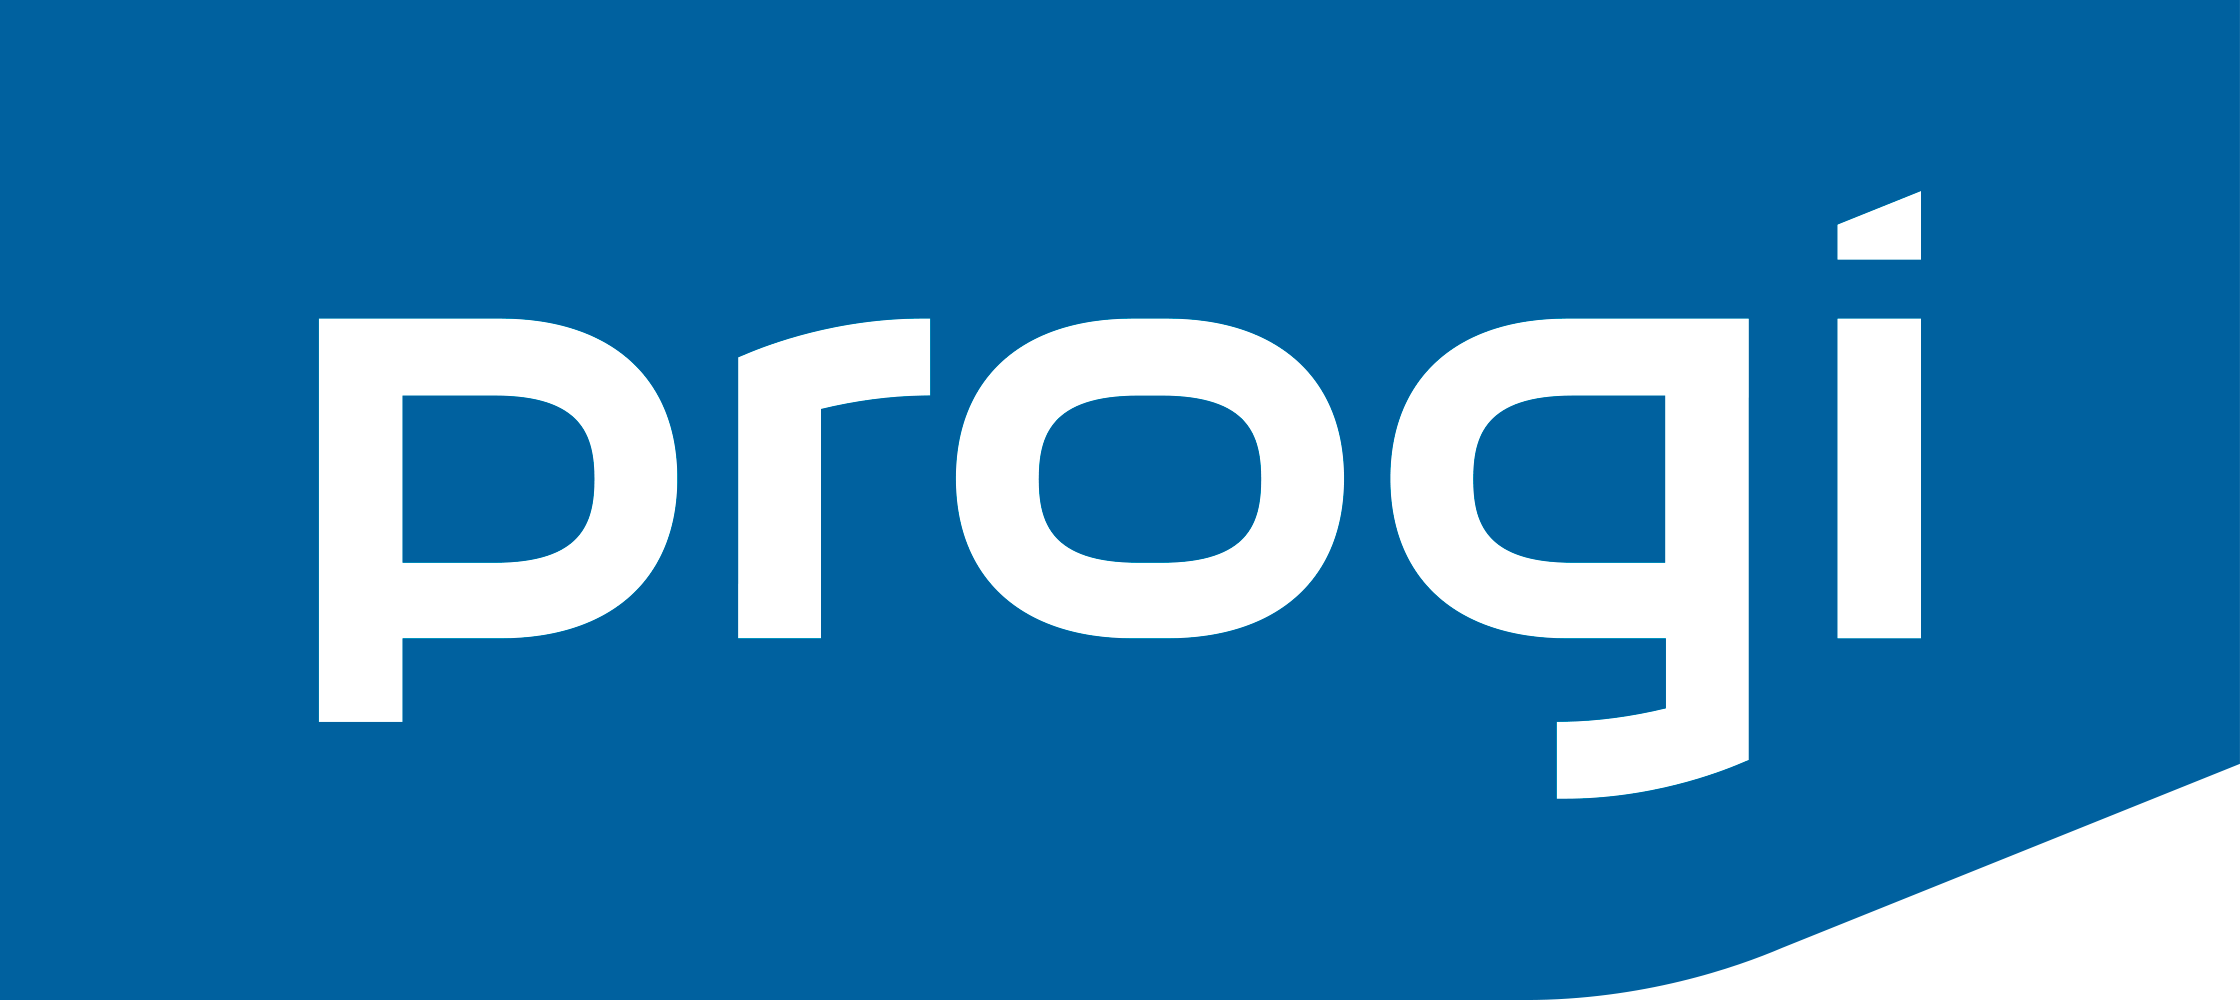 Progi_1000